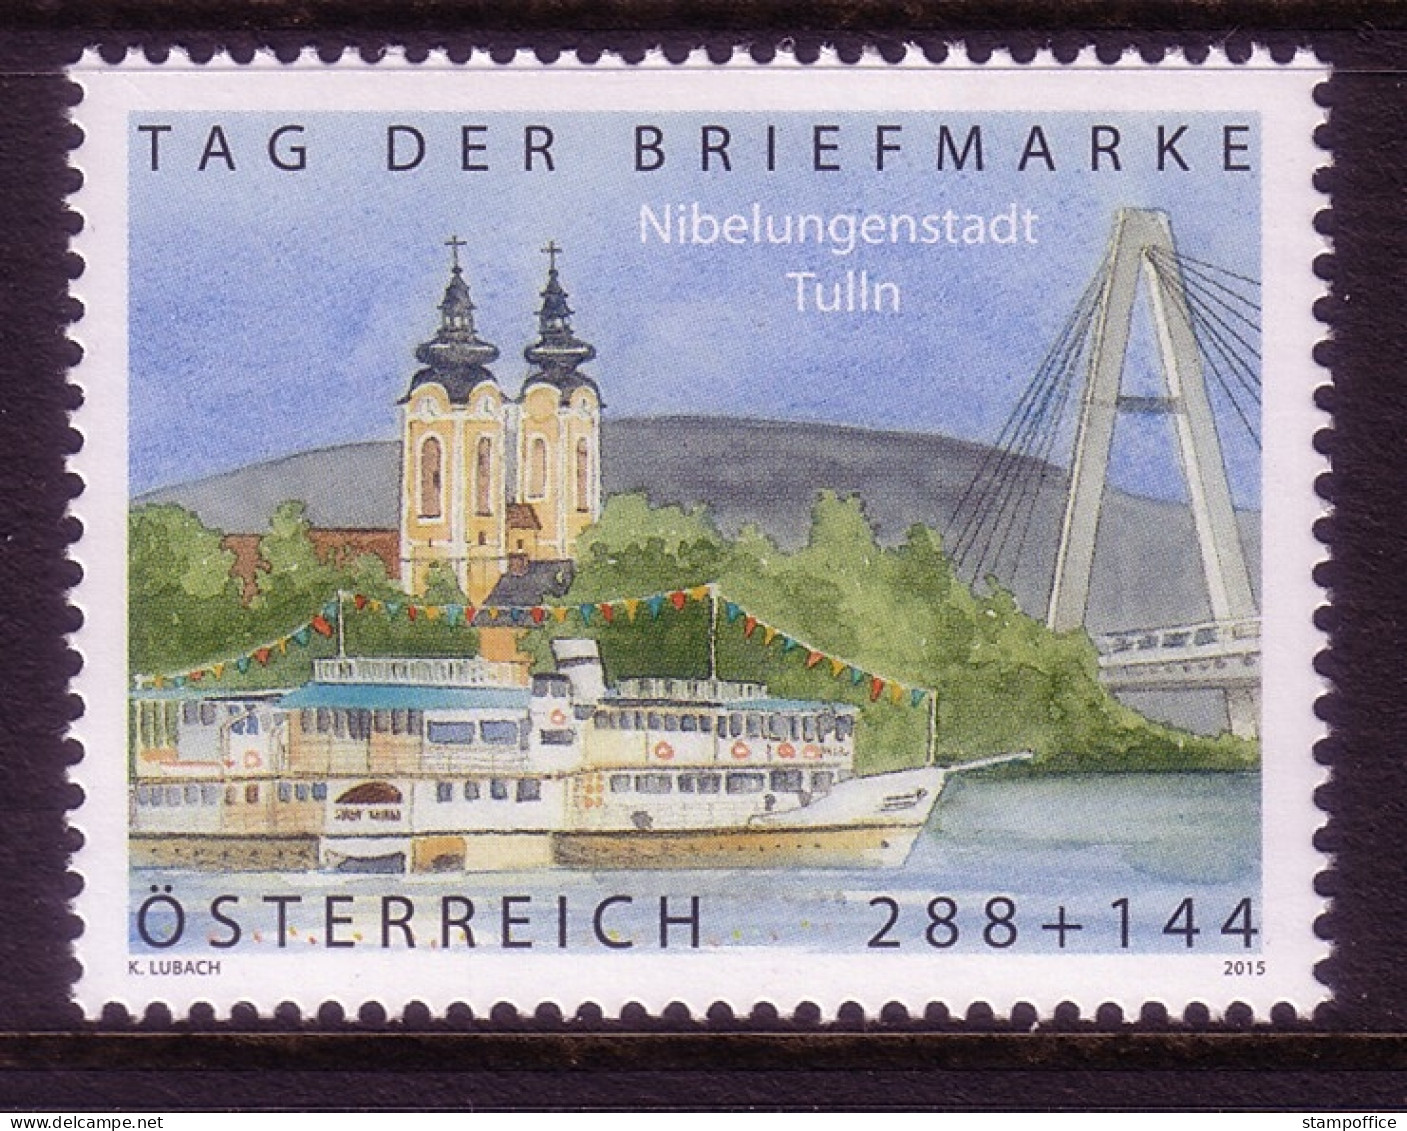 ÖSTERREICH MI-NR. 3218 POSTFRISCH(MINT) TAG DER BRIEFMARKE 2015 NIBELUNGENSTADT TULLN - Unused Stamps